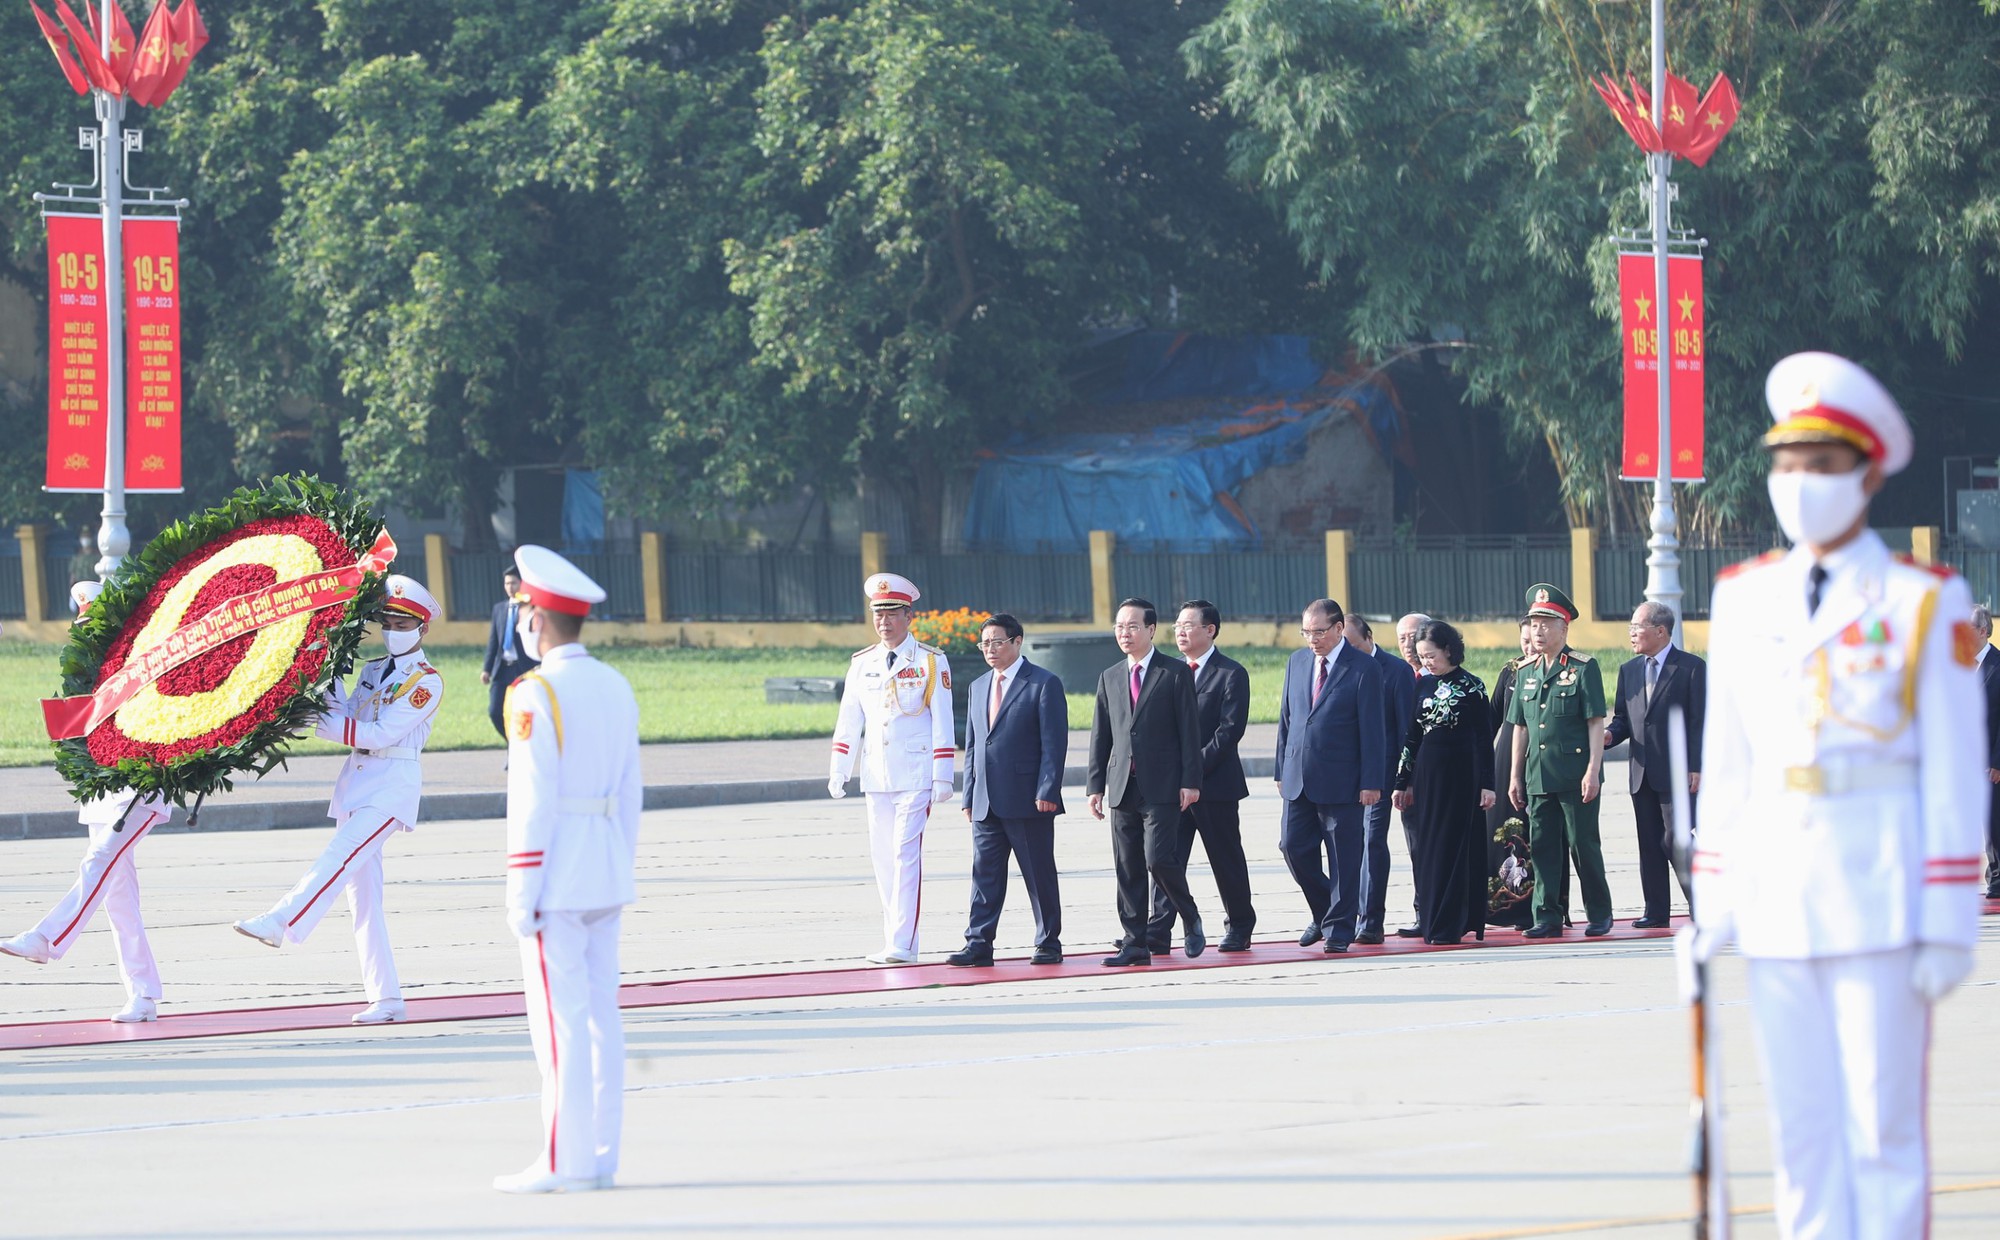 Lãnh đạo Đảng, Nhà nước vào lăng viếng Chủ tịch Hồ Chí Minh - Ảnh 1.